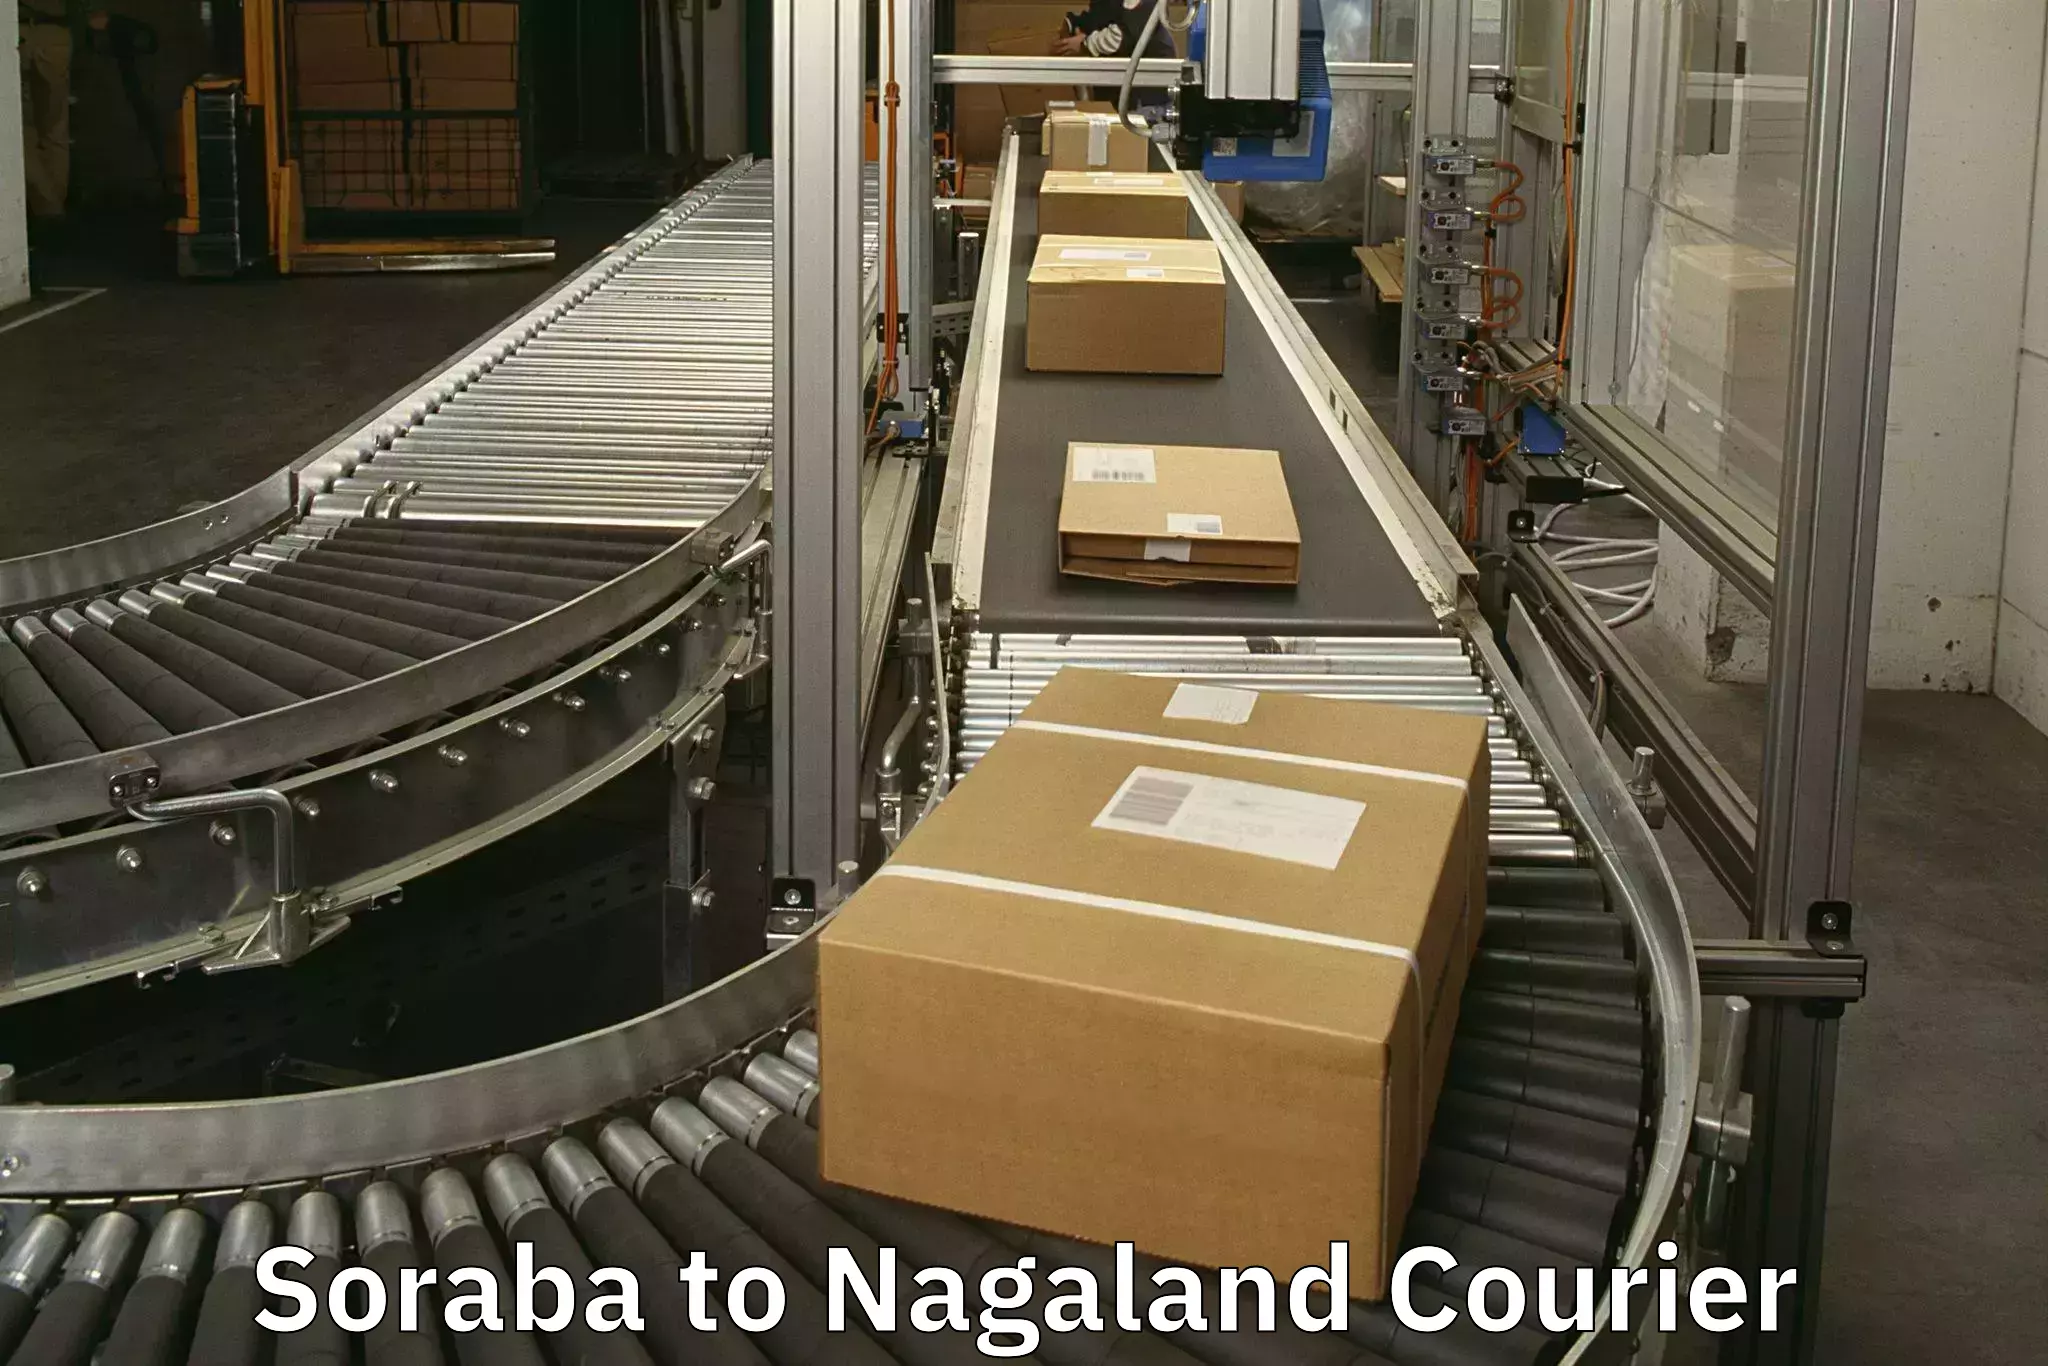 Luggage transport service Soraba to Nagaland